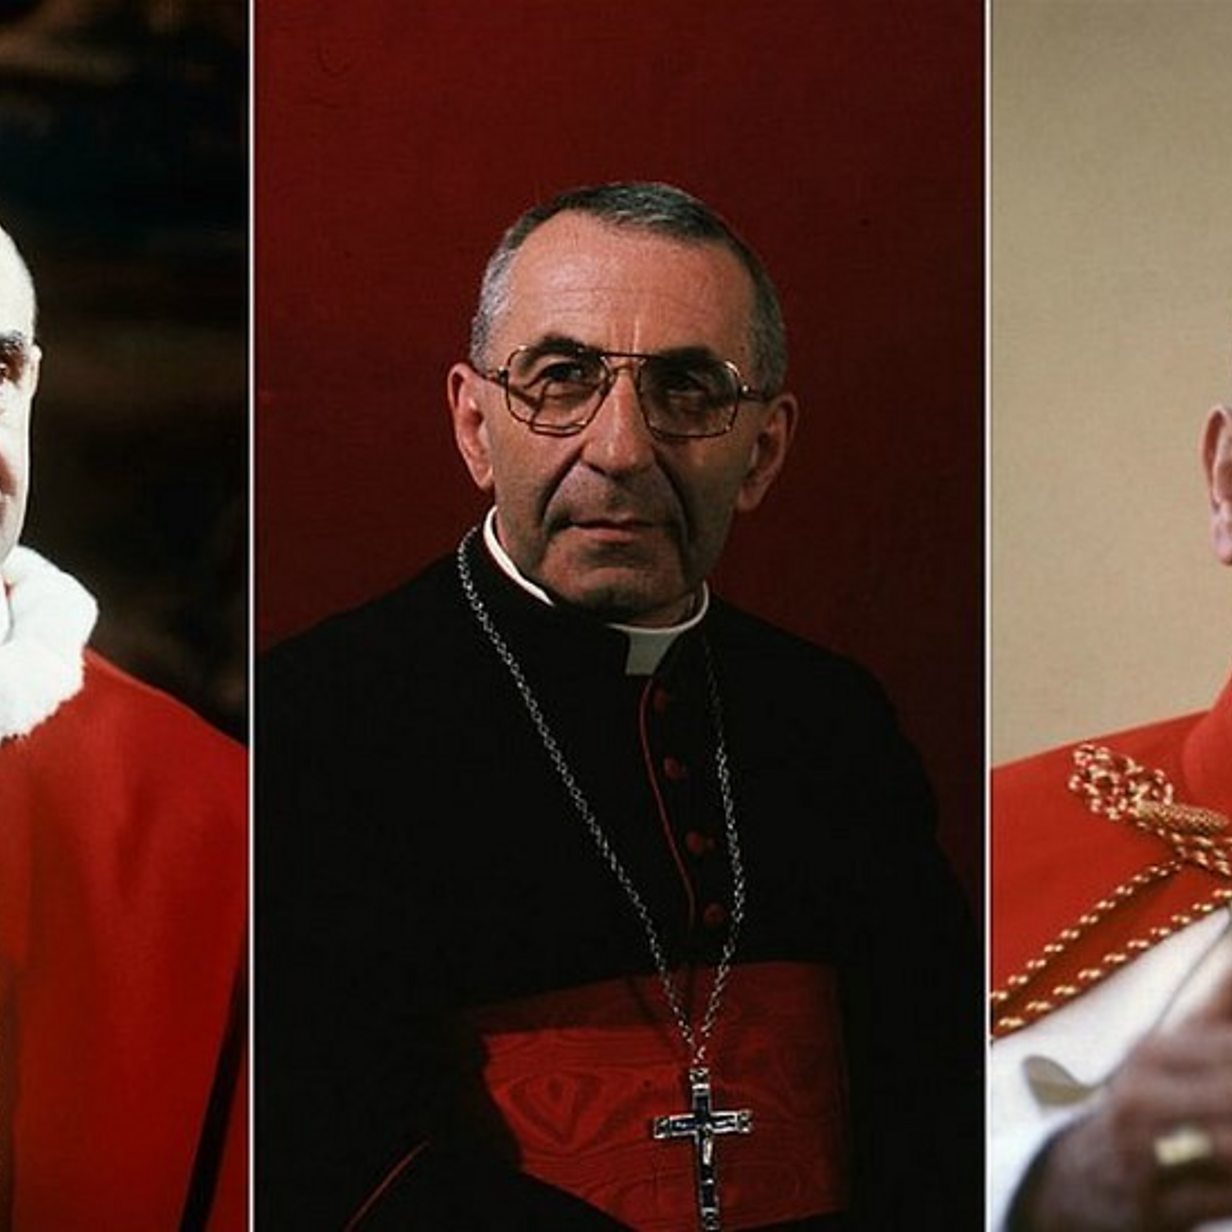 The extraordinary of three popes - BBC News